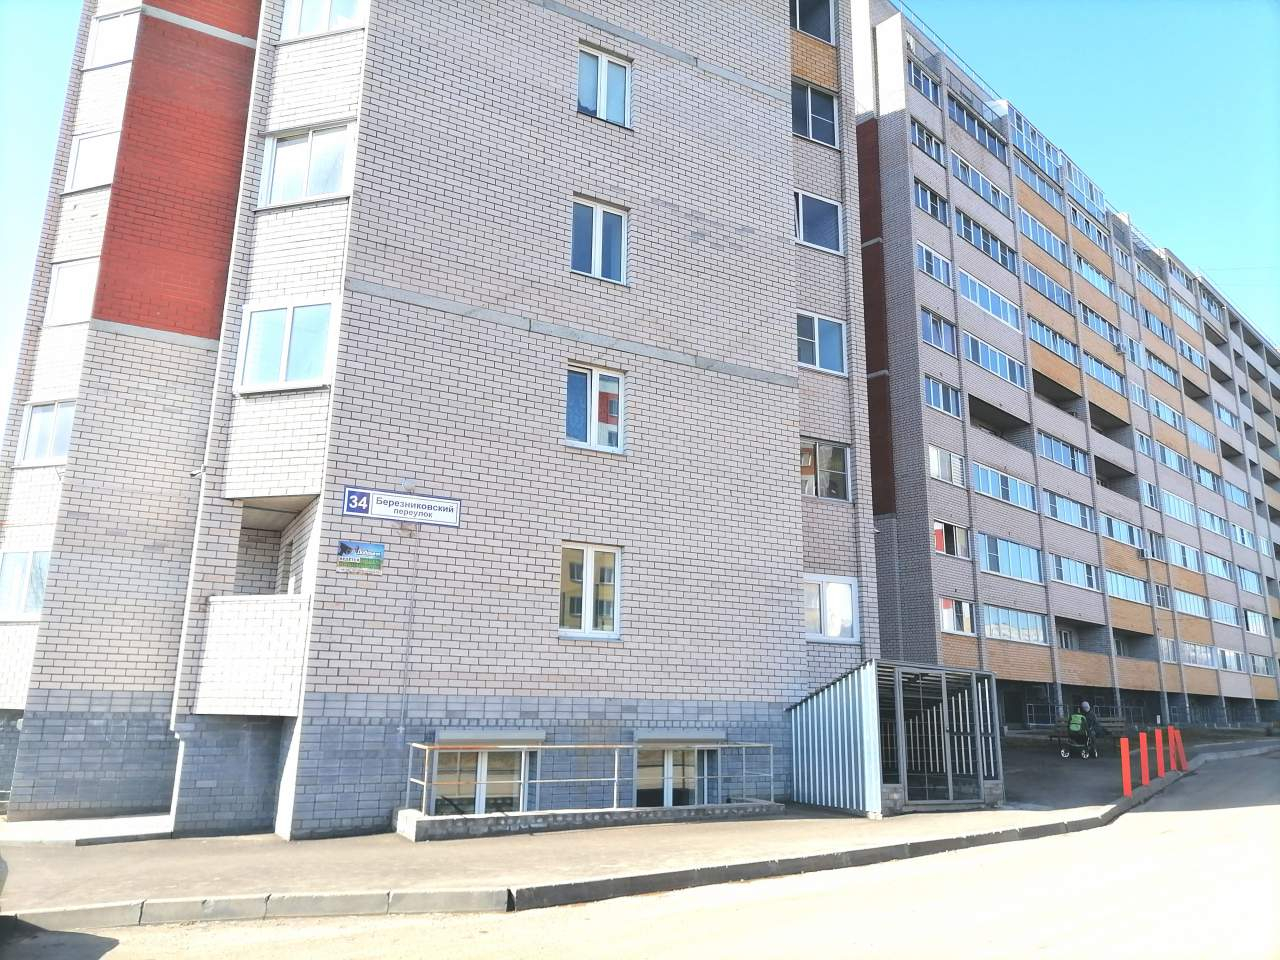 Продажа 1-комнатной квартиры, Киров, Березниковский переулок,  д.34